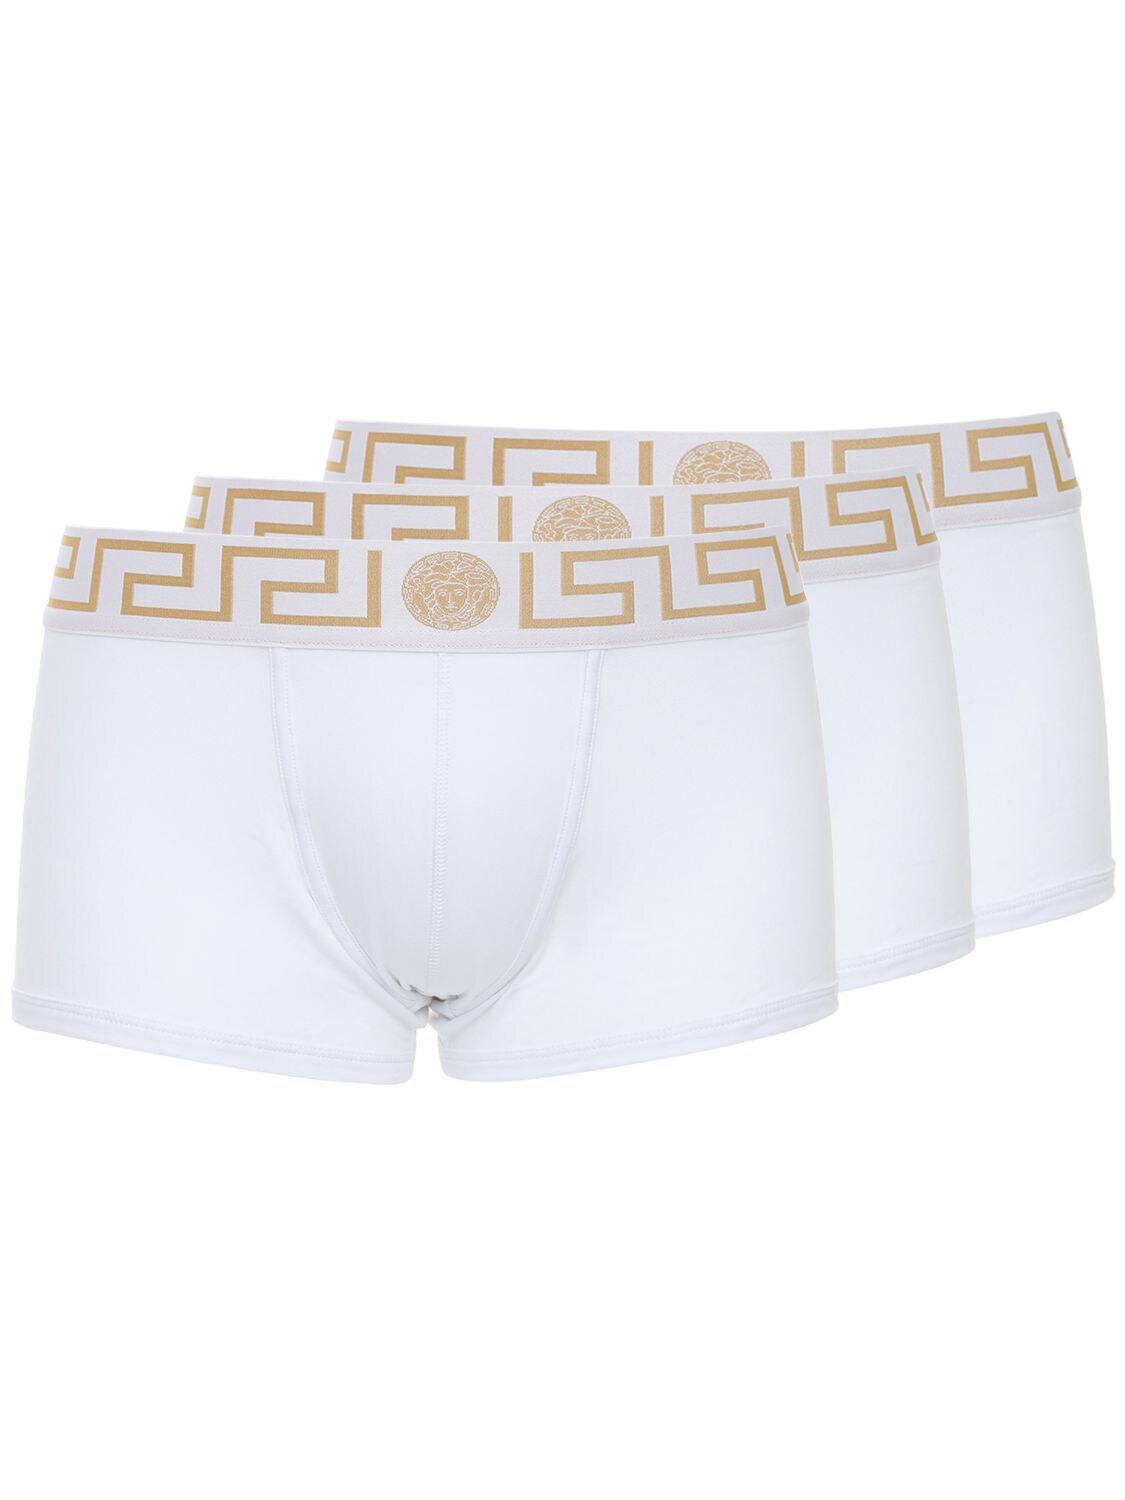 Versace Underwear - Pack of 3 greca stretch boxer briefs - White ...